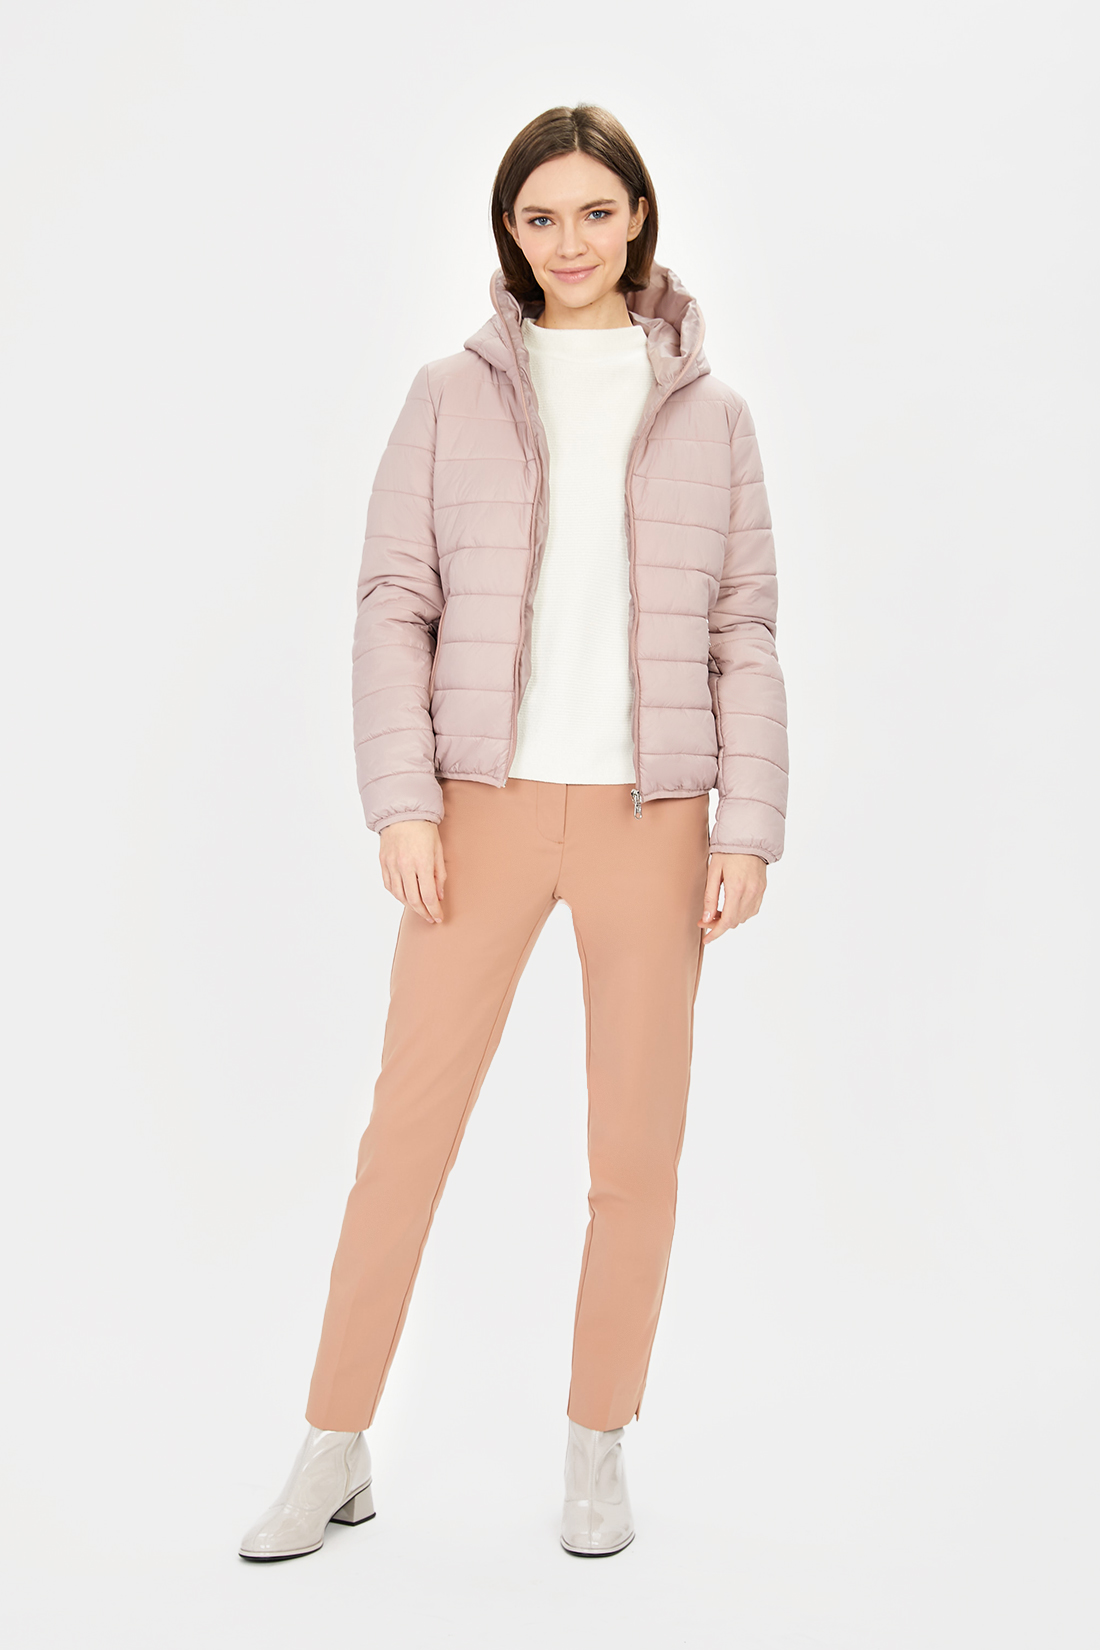 Куртка (арт. baon B031206), размер XXL, цвет розовый Куртка (арт. baon B031206) - фото 4